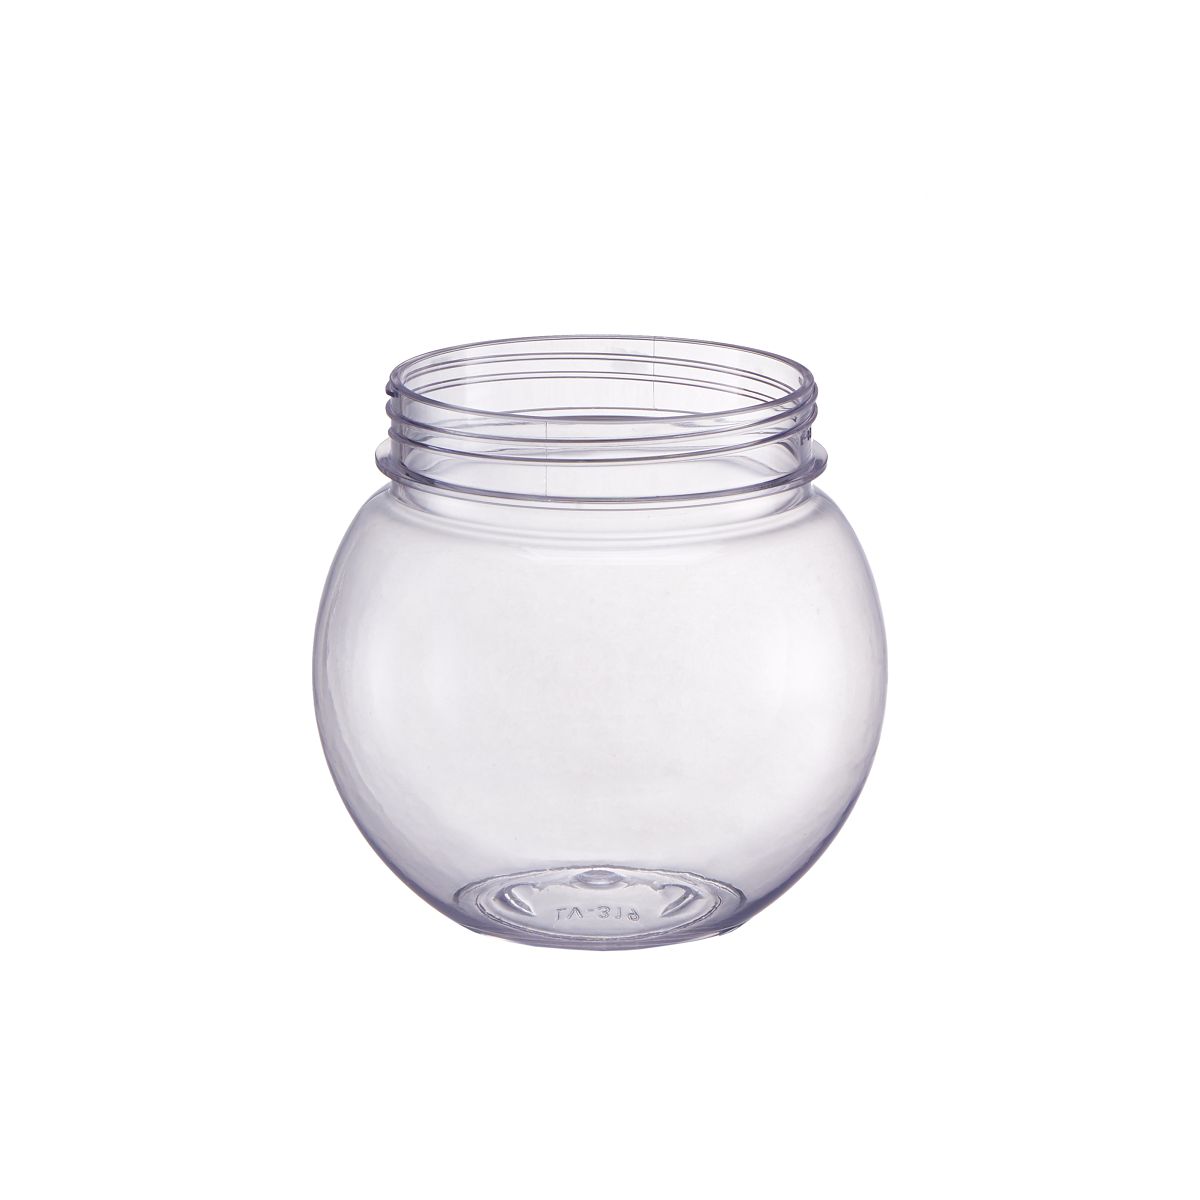 Wild-Mouth Jar Bottle